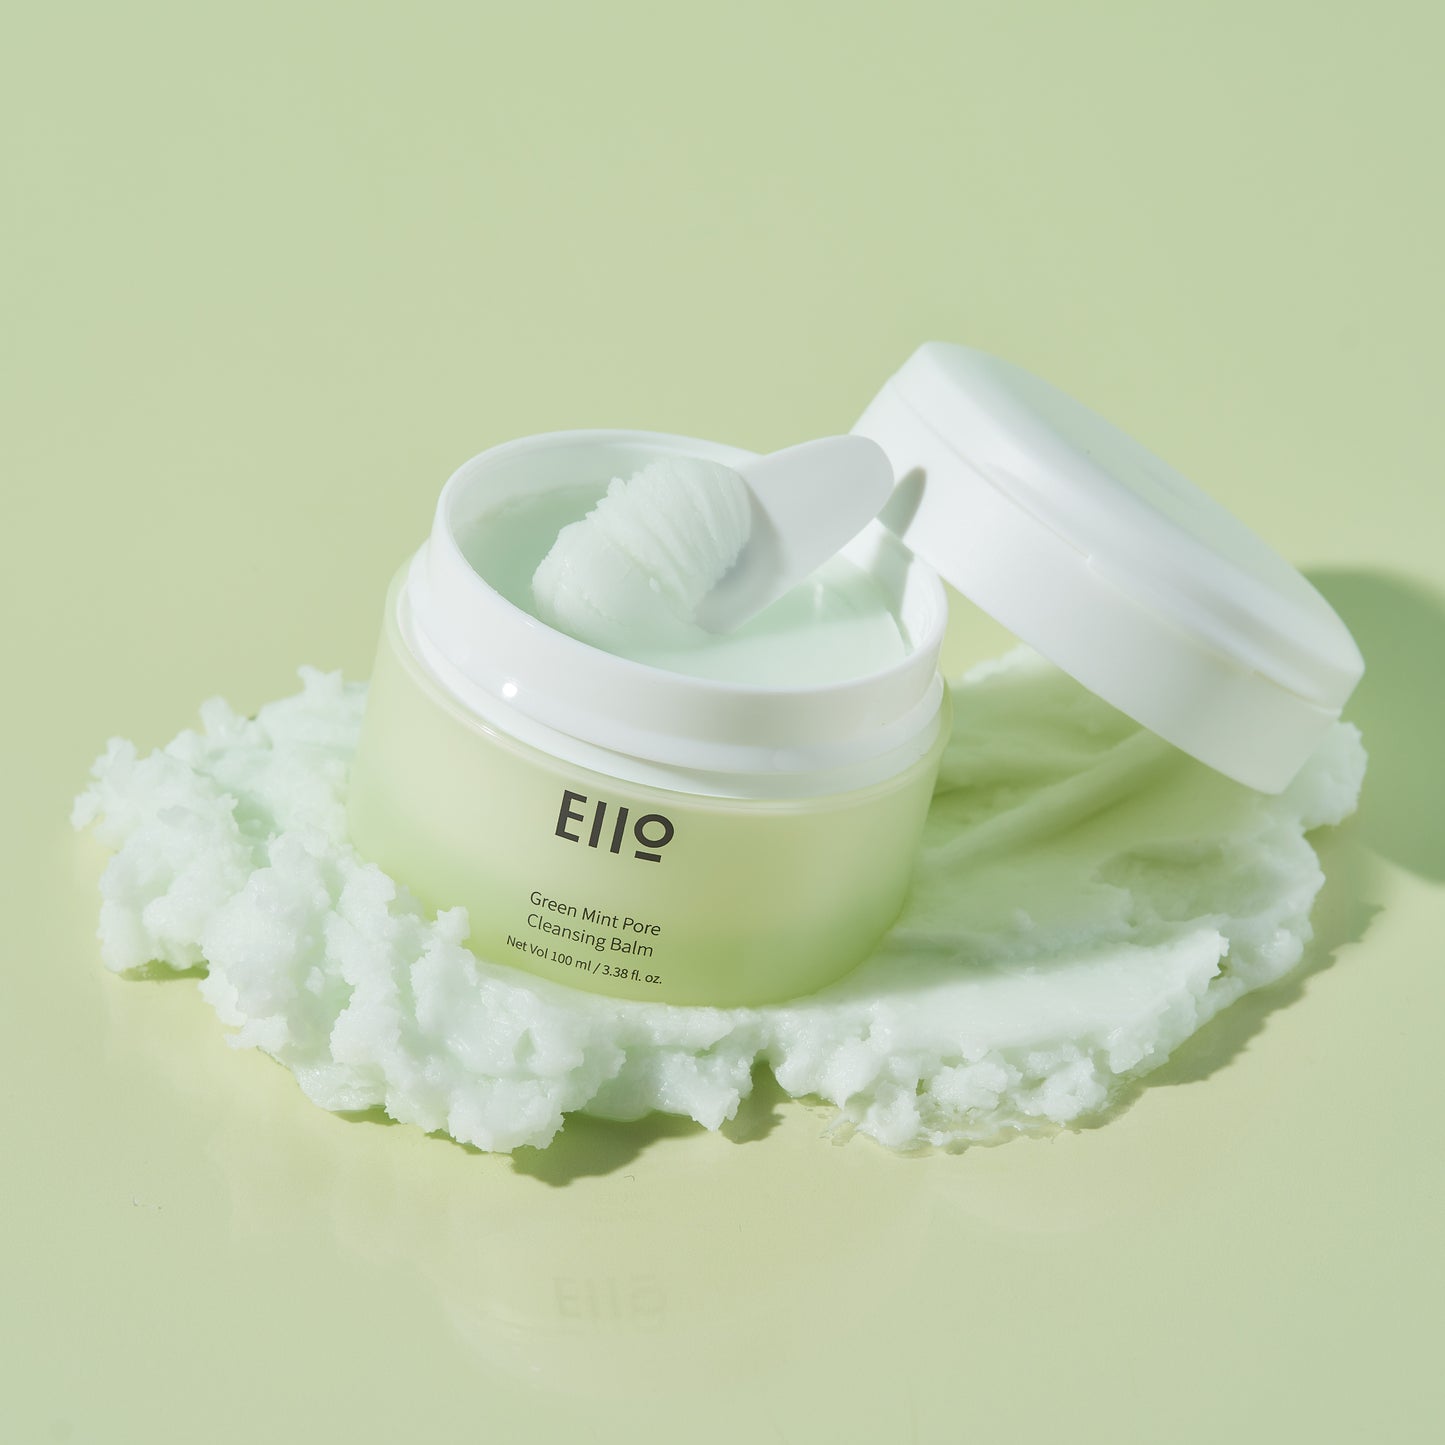 EIIO Green Mint Pore Cleansing Balm